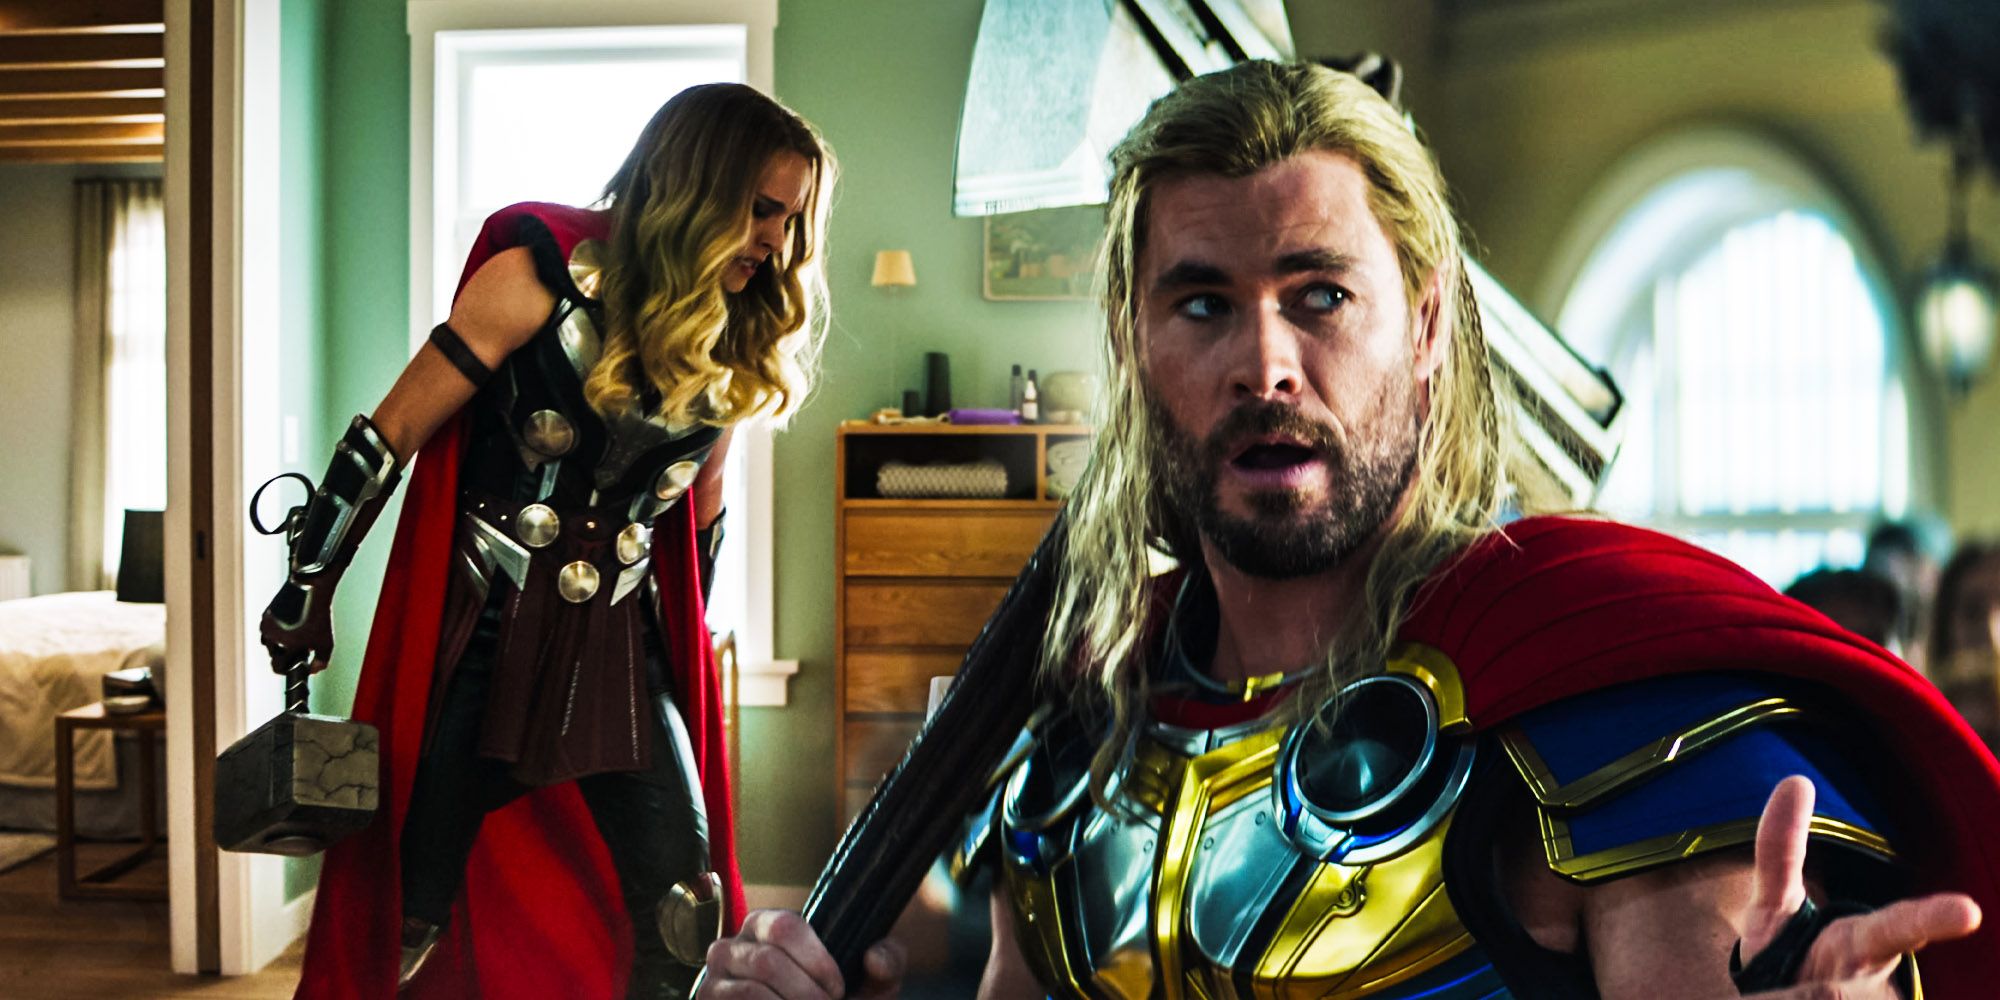 Thor holding Stormbreaker and Jane holding Mjolnir